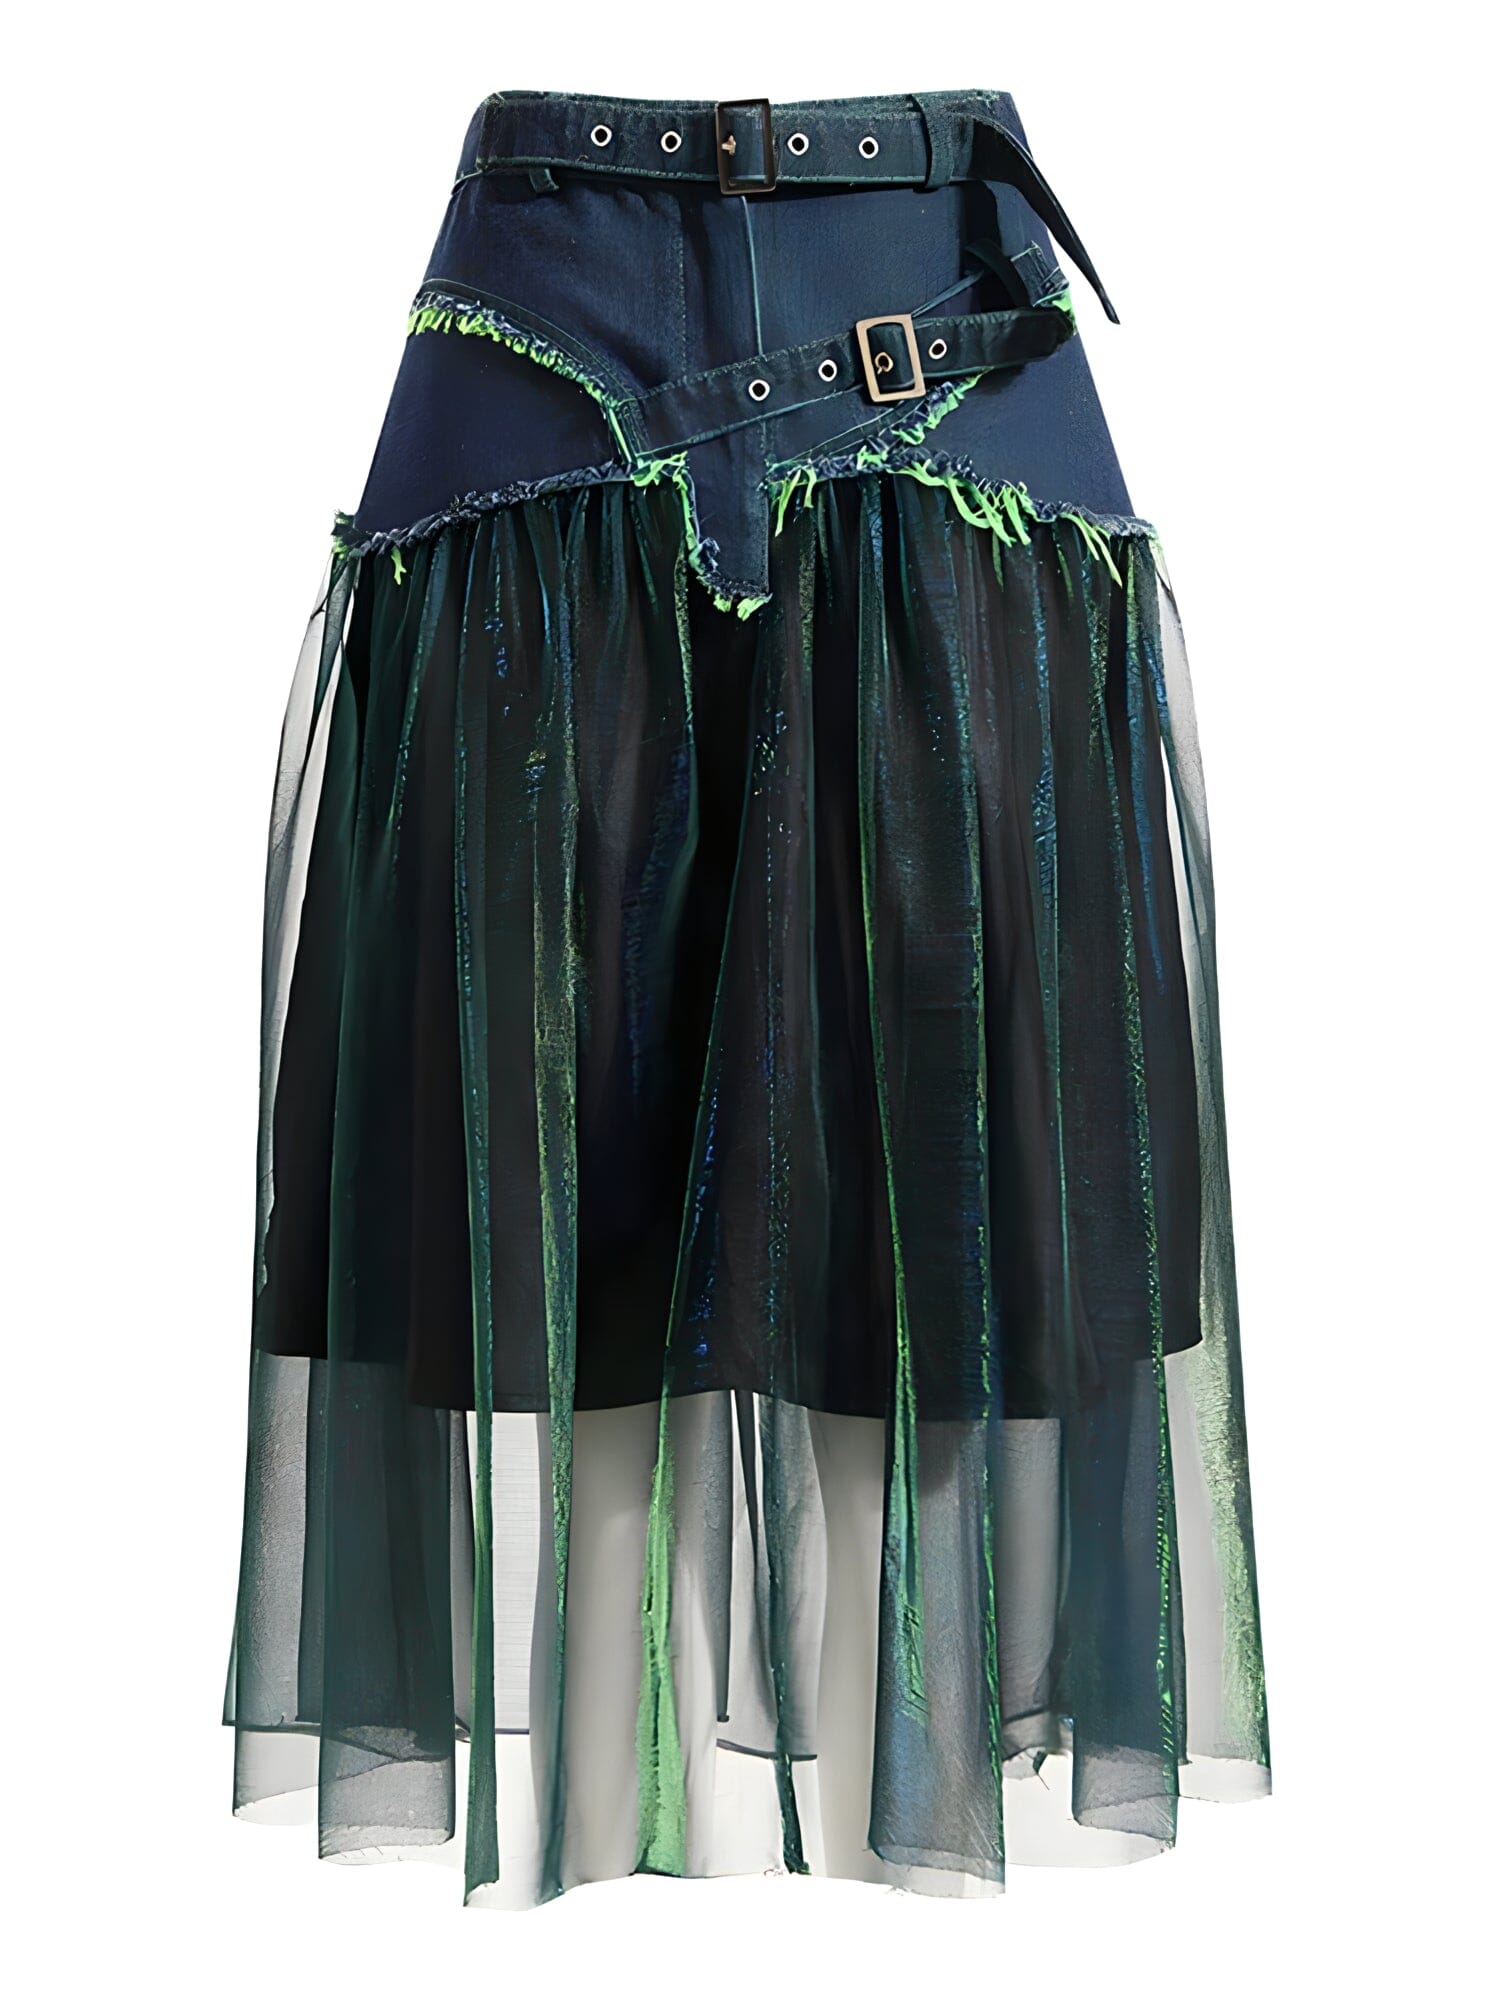 The Gypsy High Waist Denim Skirt 0 SA Styles S 